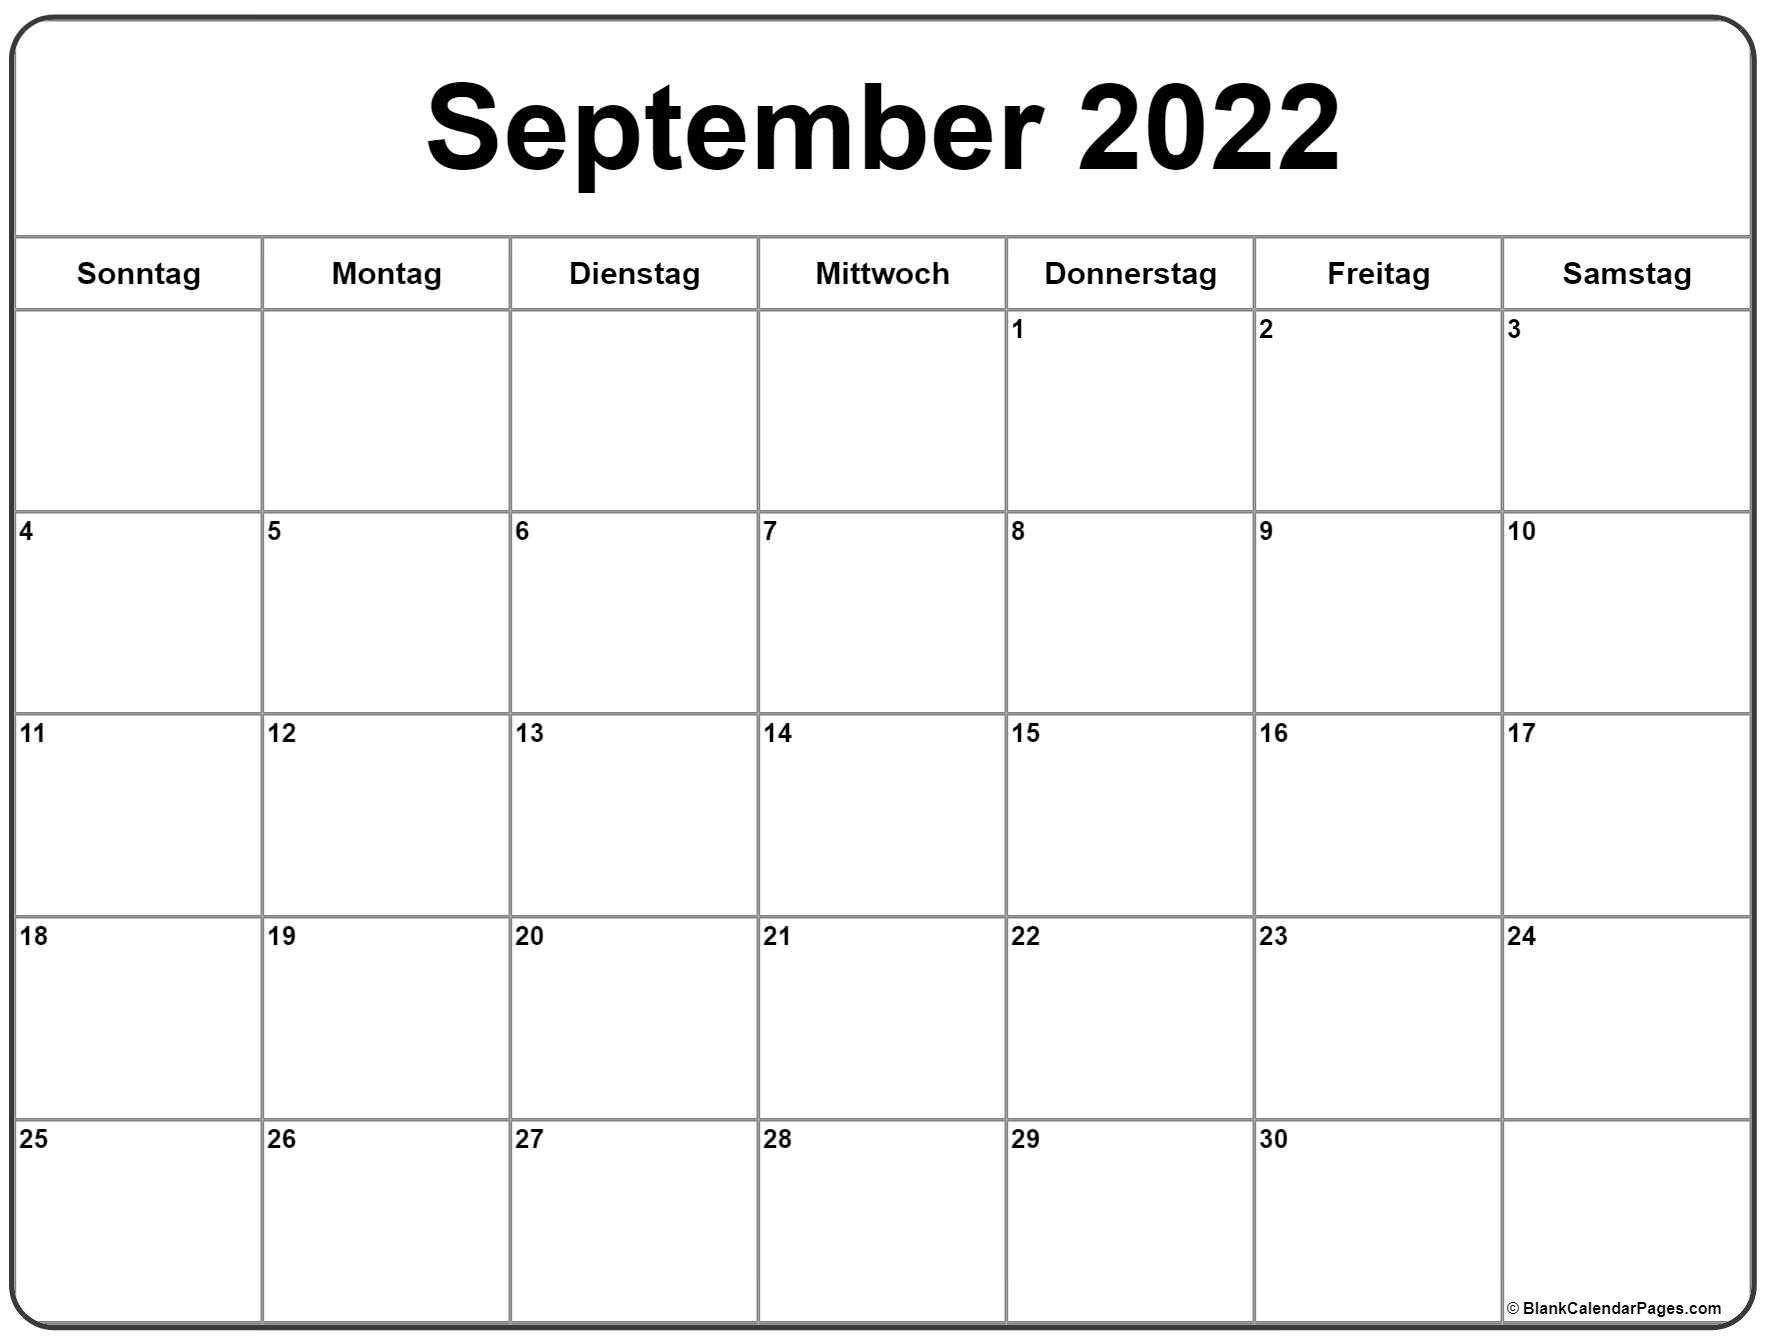 September 2022 Kalender Auf Deutsch | Kalender 2022 General Blue December 2021 Calendar